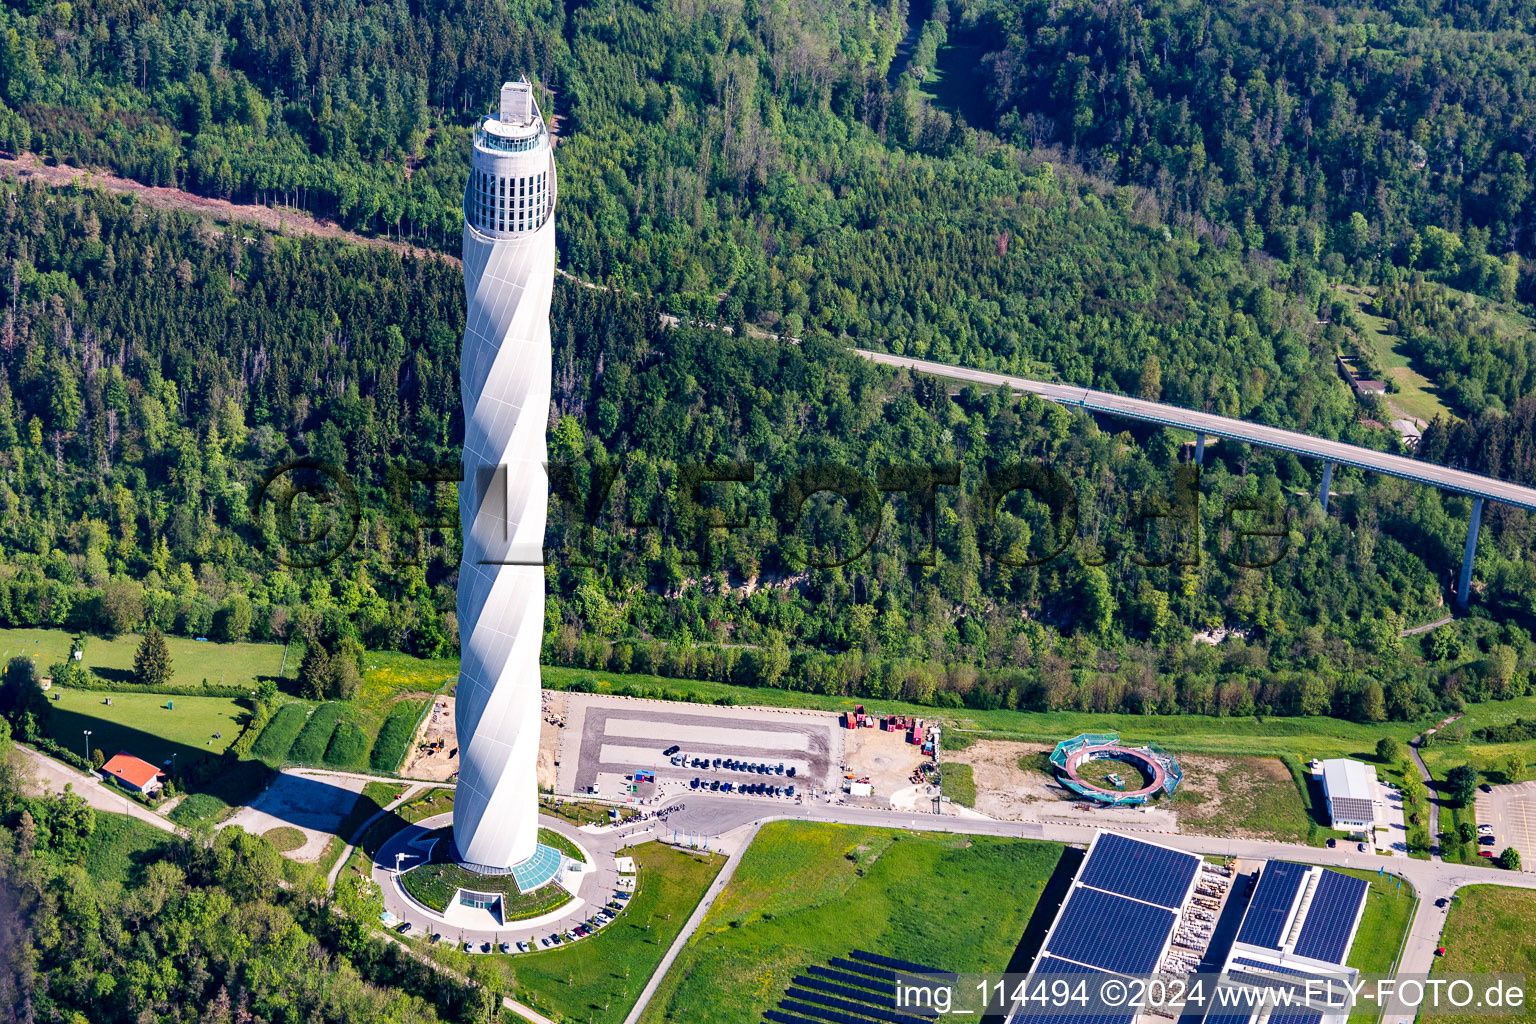 Turm thyssenkrupp Testturm für Expressaufzüge am Berner Feld in Rottweil. Das neue Wahrzeichen der Kleinstadt Rottweil ist derzeit höchstes Bauwerk in Baden-Württemberg, Deutschland aus der Luft